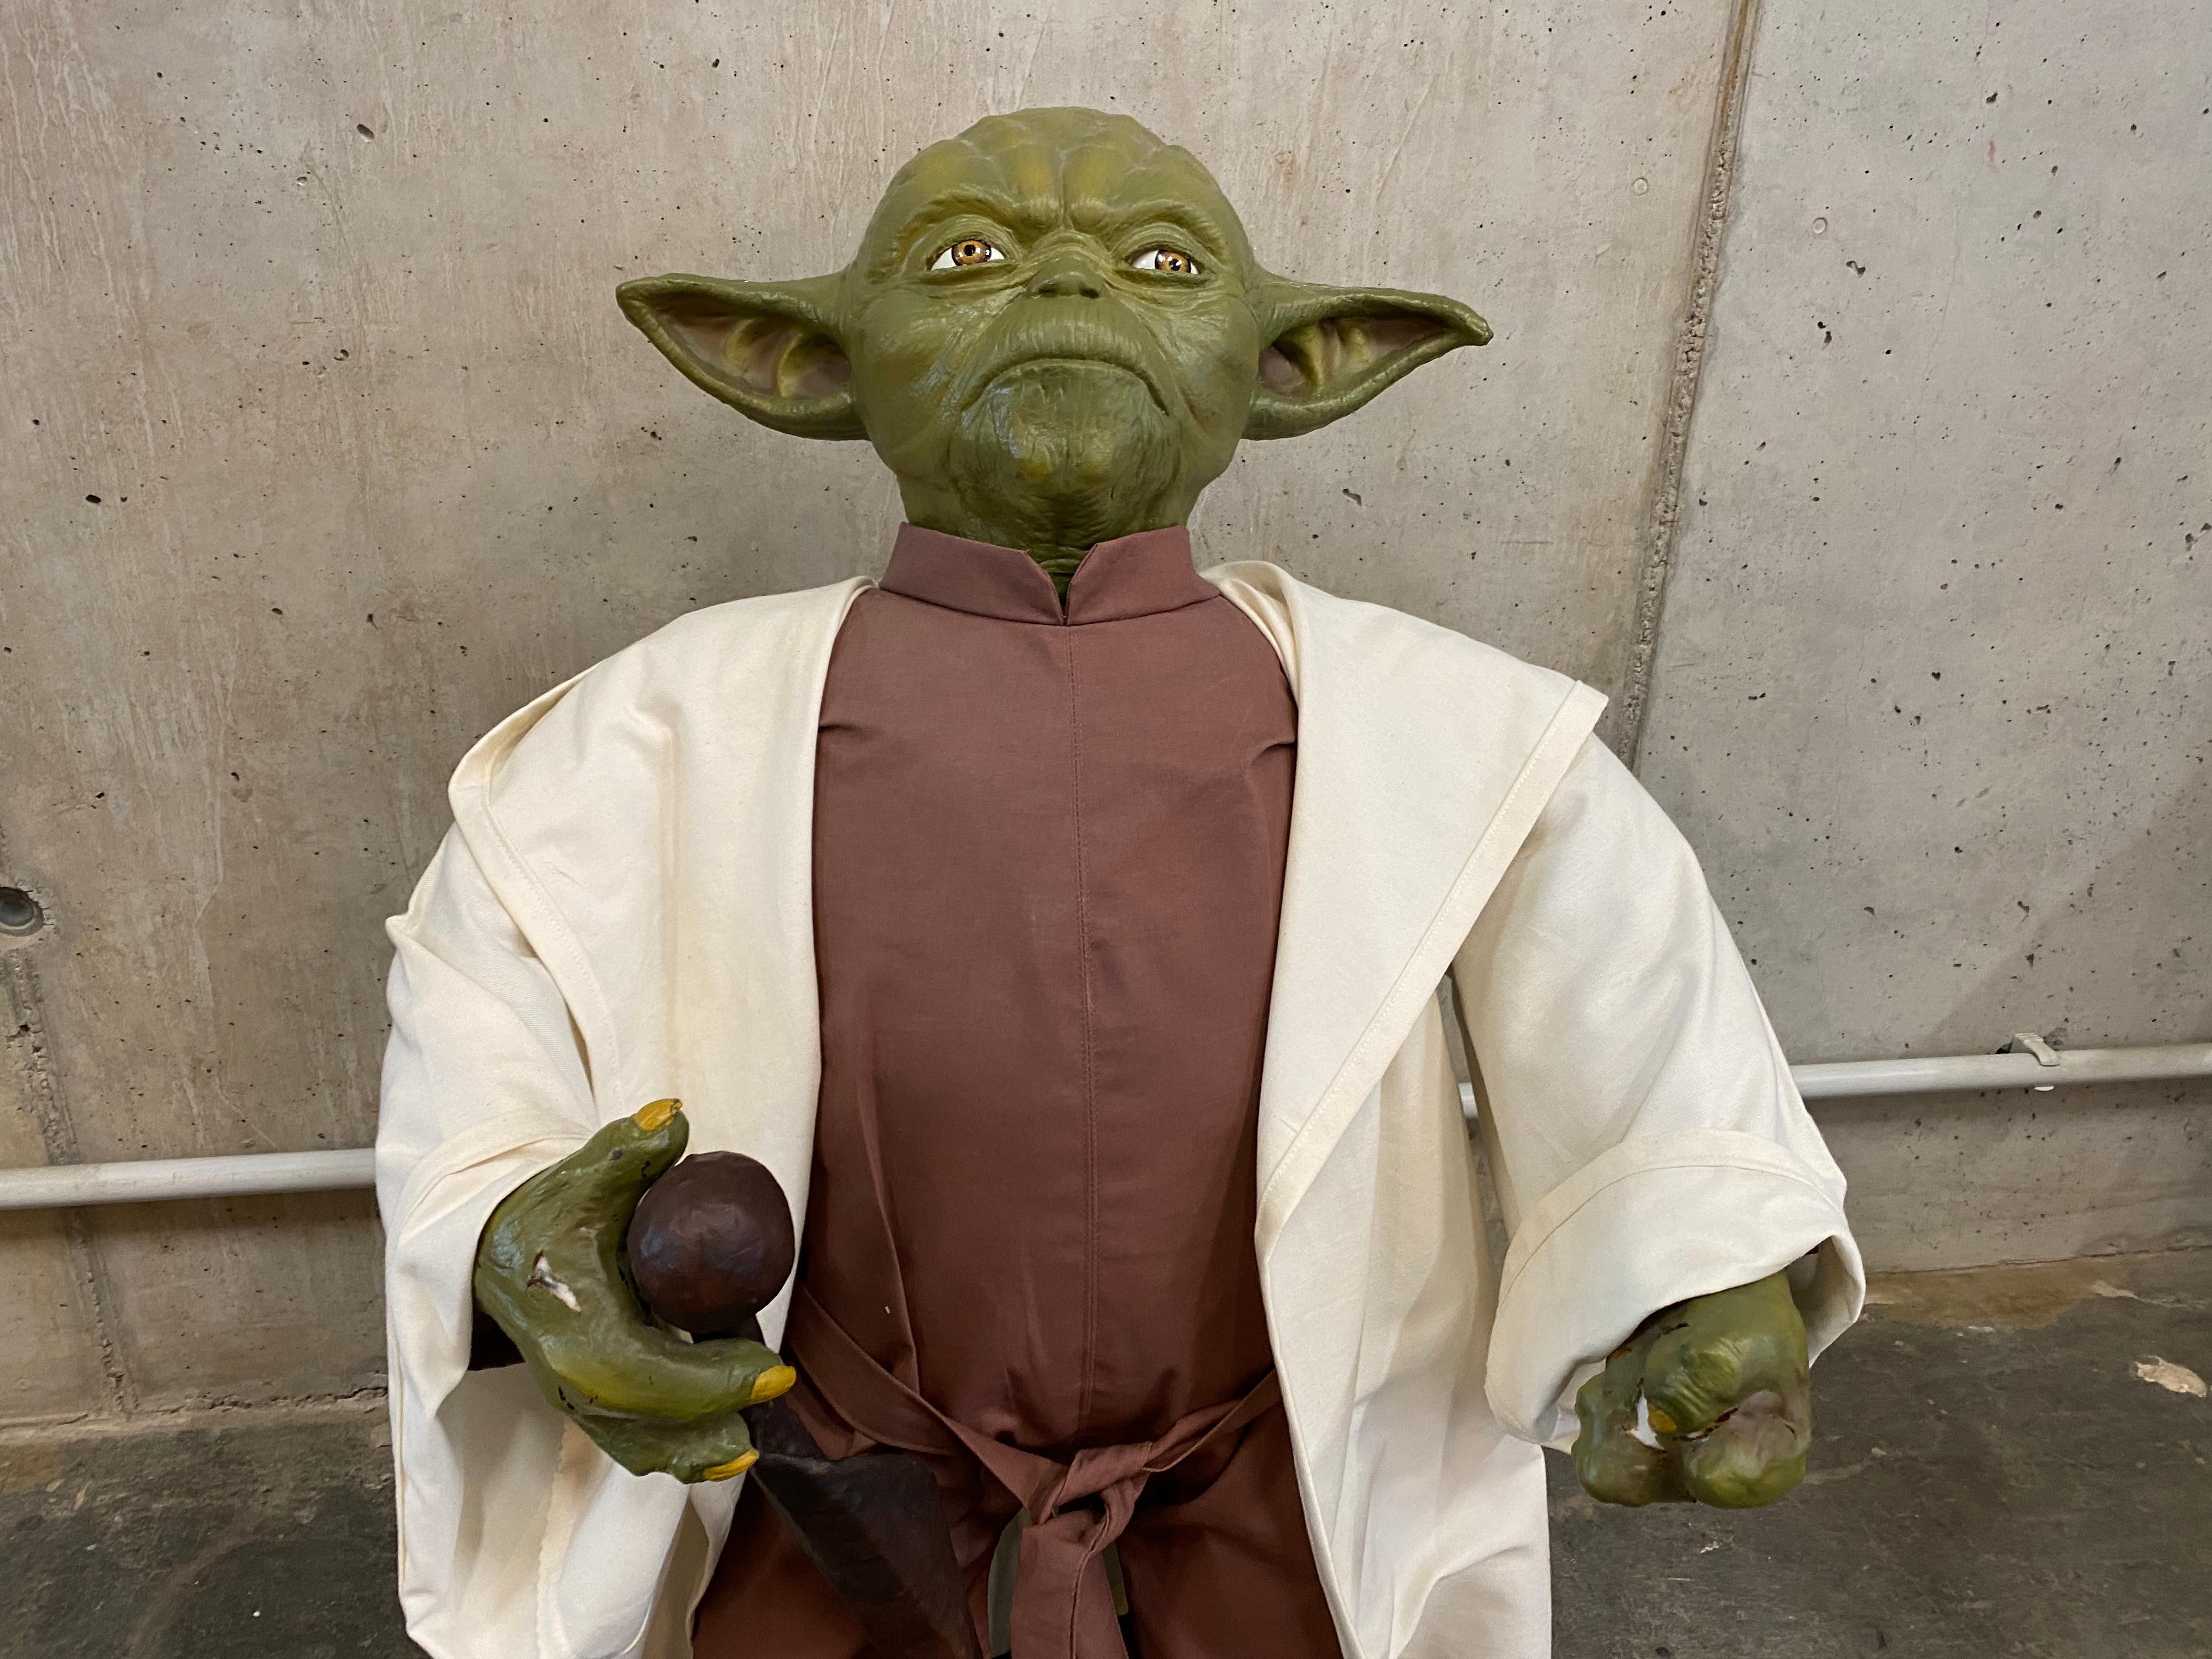 Diese lebensgroße Meister-Yoda-Figur ist eine alte Fotorequisite aus dem legendären Star-Wars-Film 